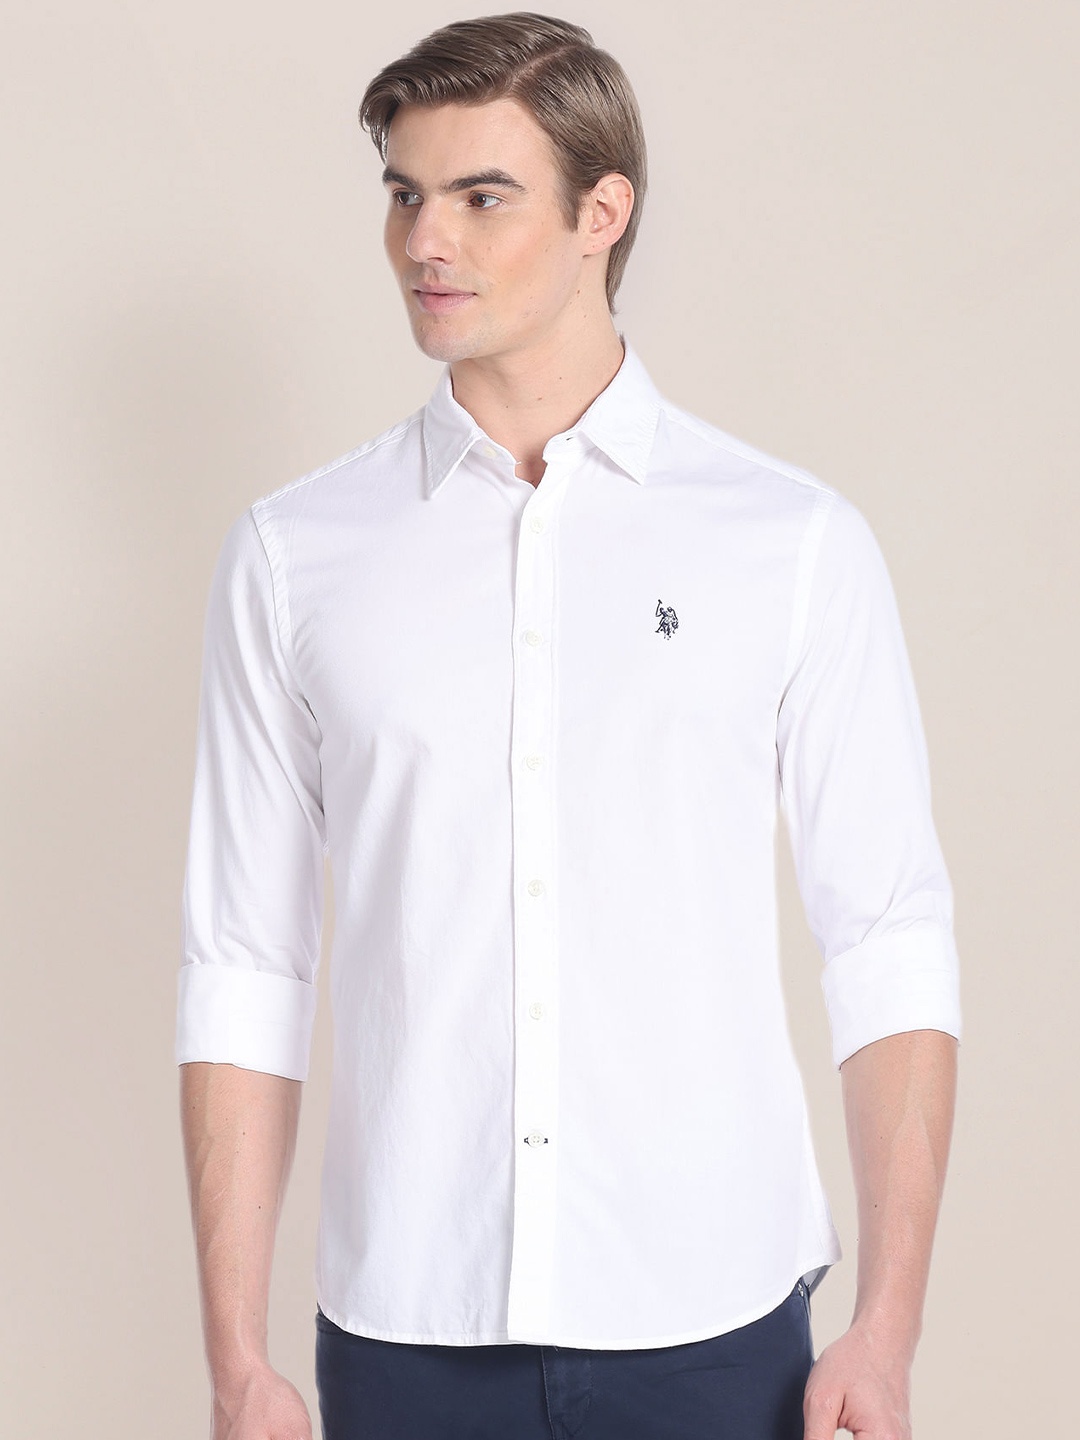 

U.S. Polo Assn. Spread Collar Cotton Twill Casual Shirt, White